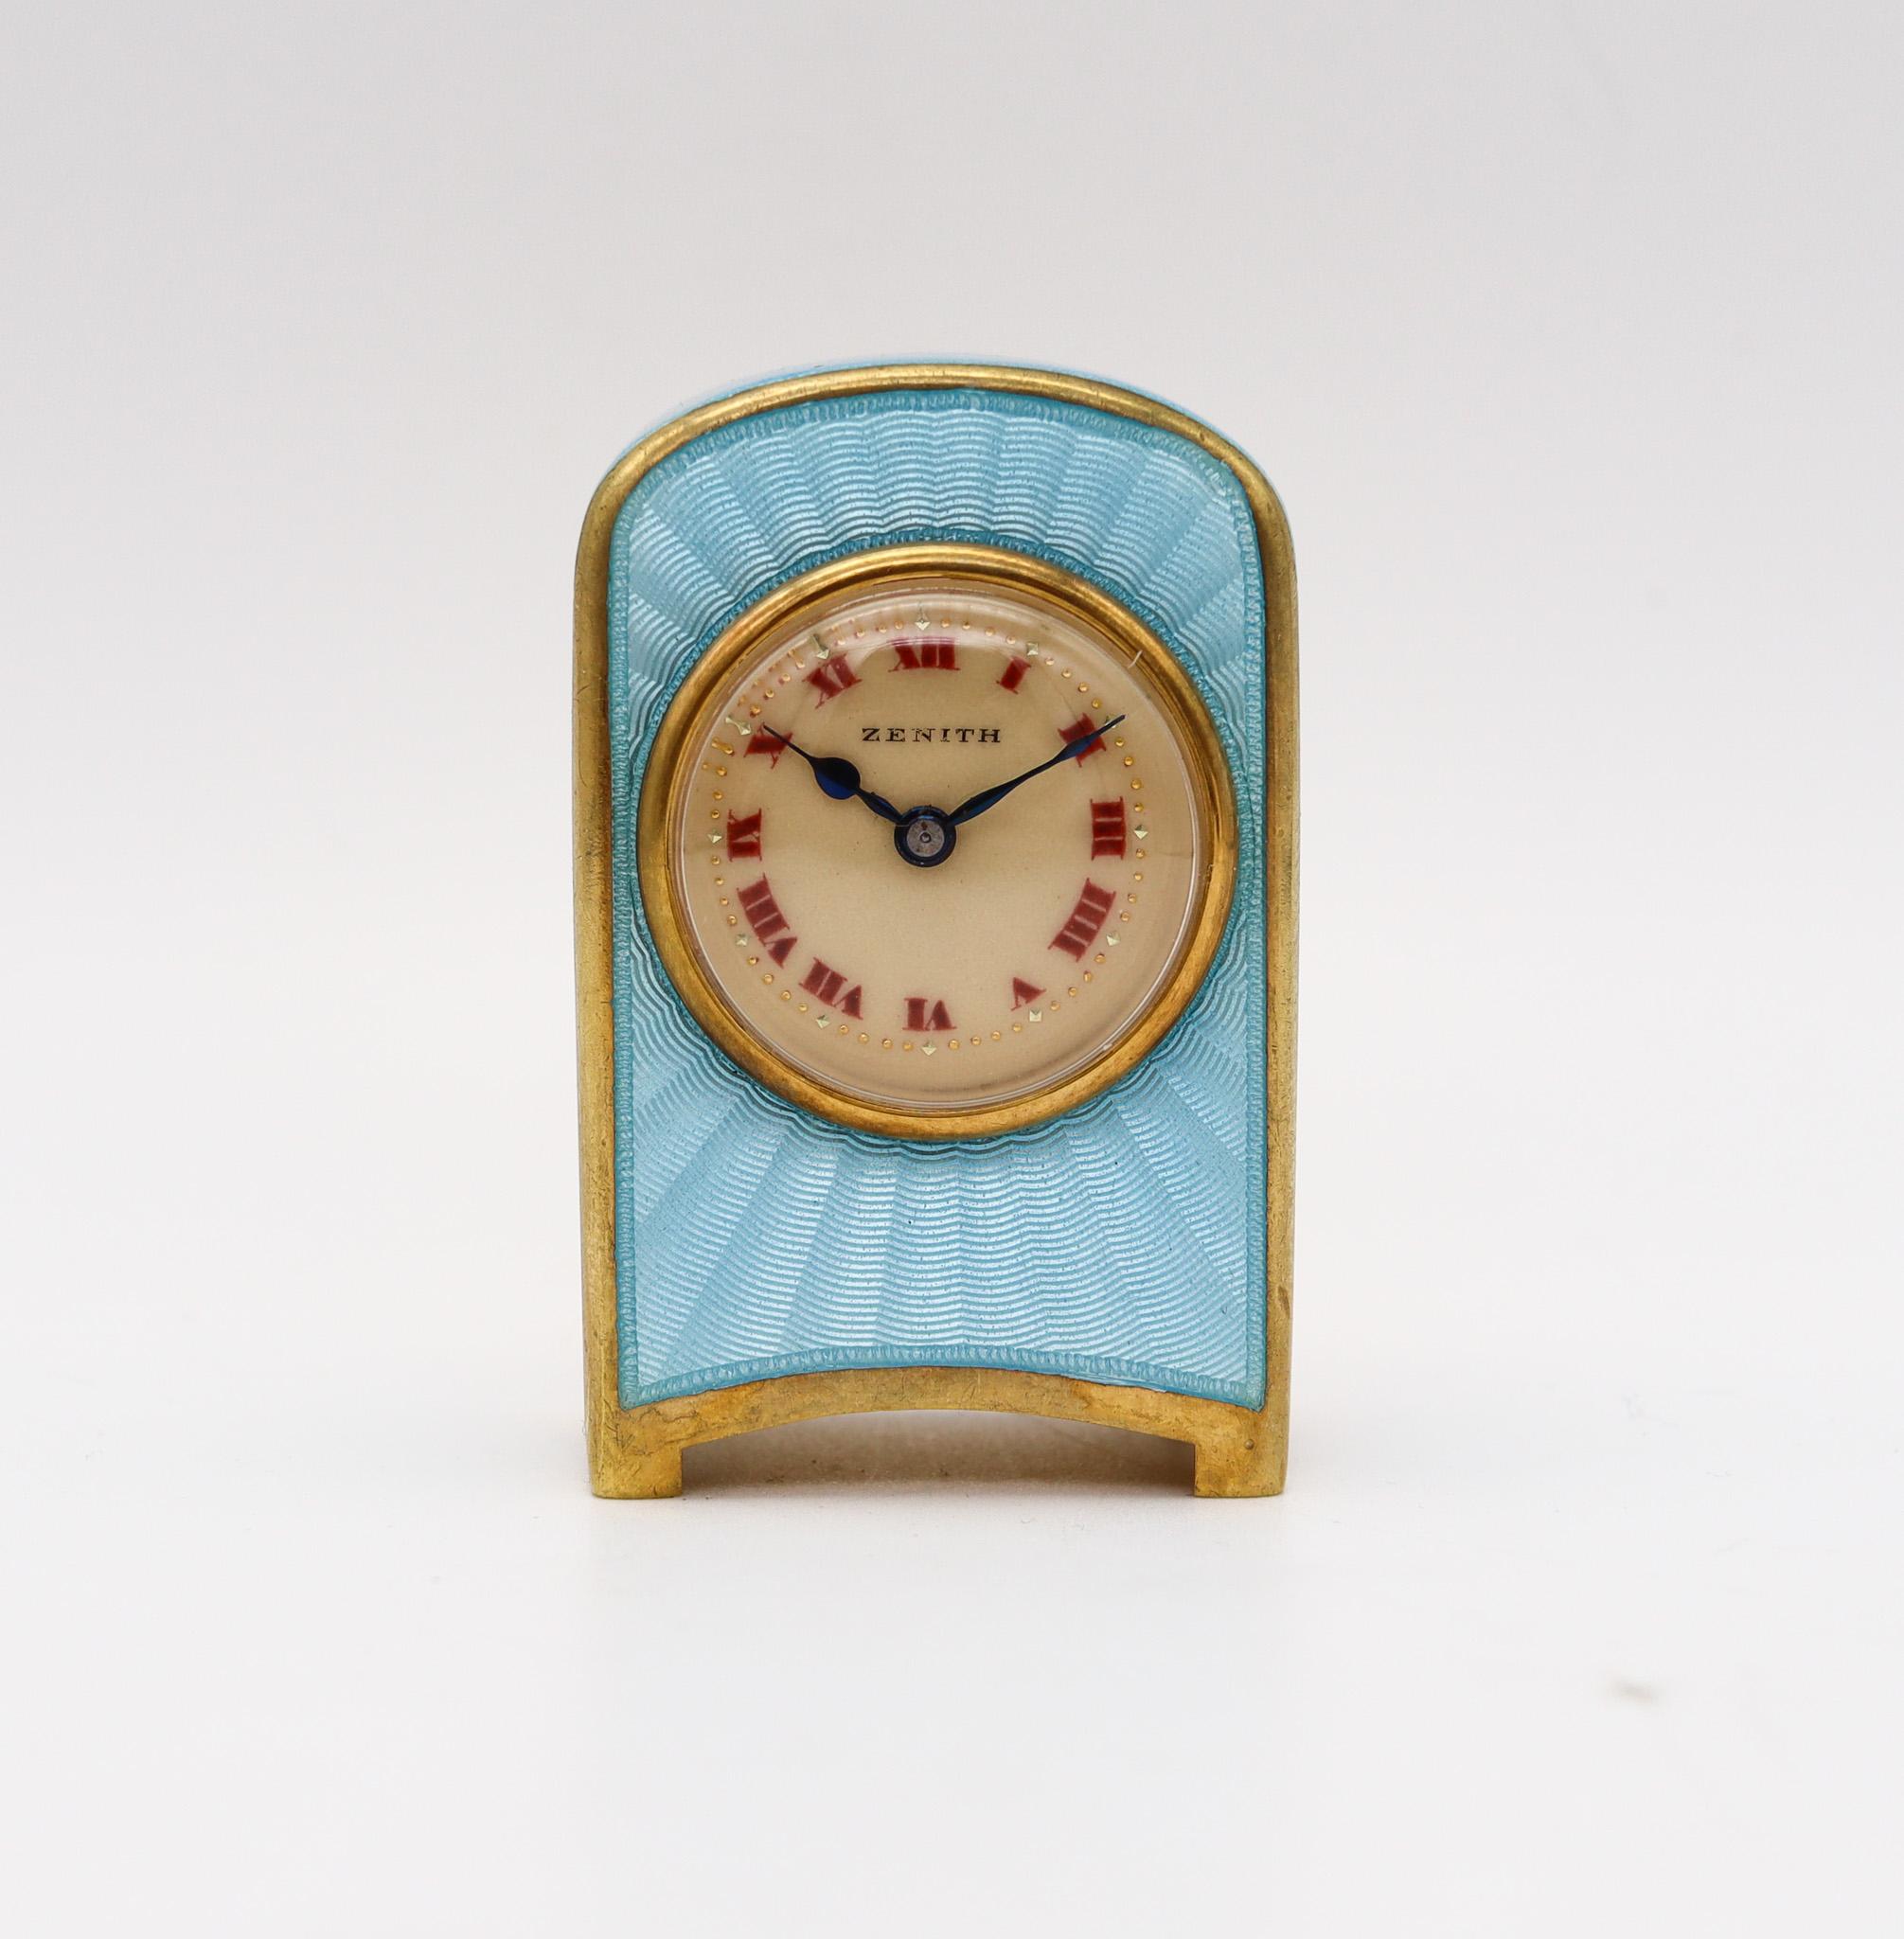 Édouardien Zenith 1910 Edwardian Miniature Travel Clock Guilloché Enamel in Gilt Sterling